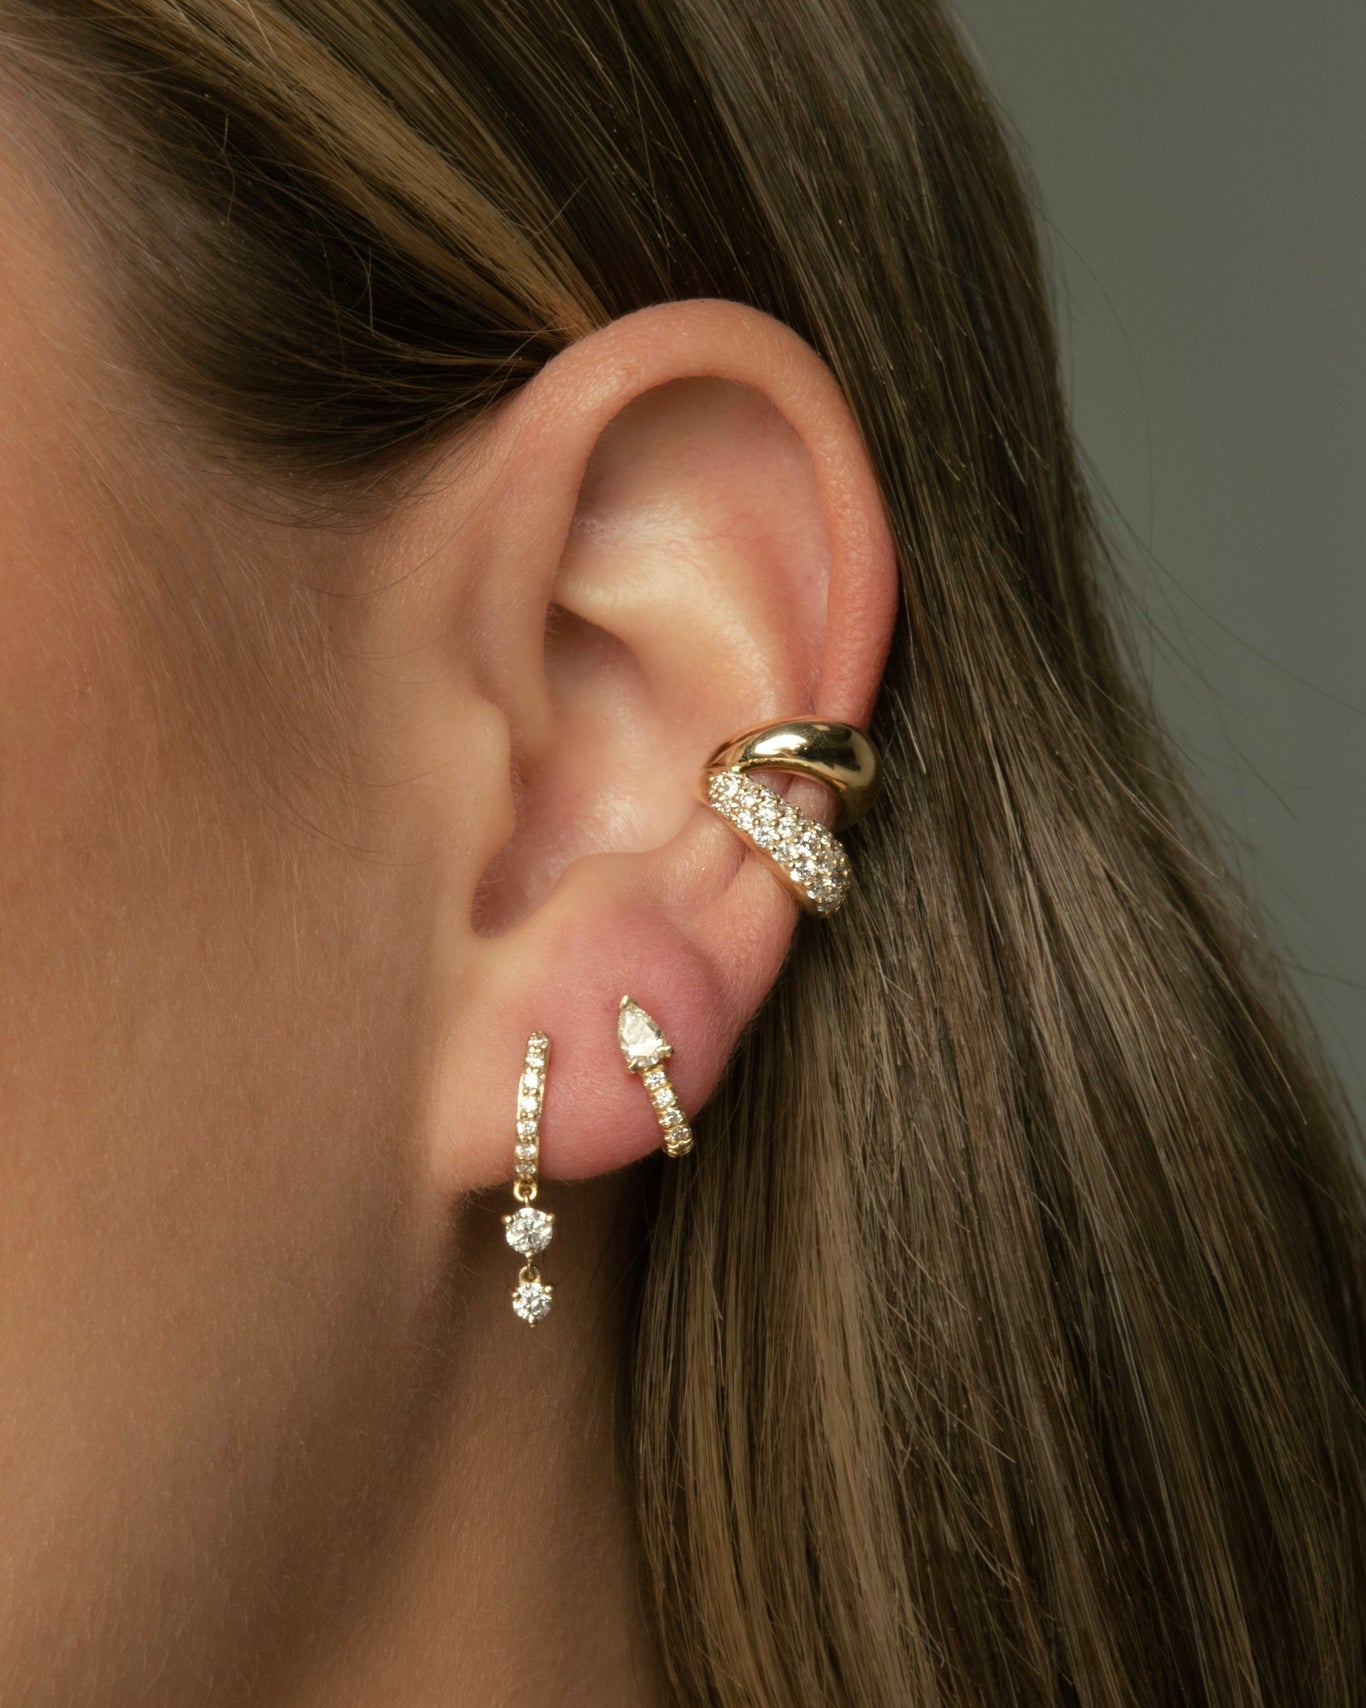 Helix Ear Cuff in Silver – Lady Grey